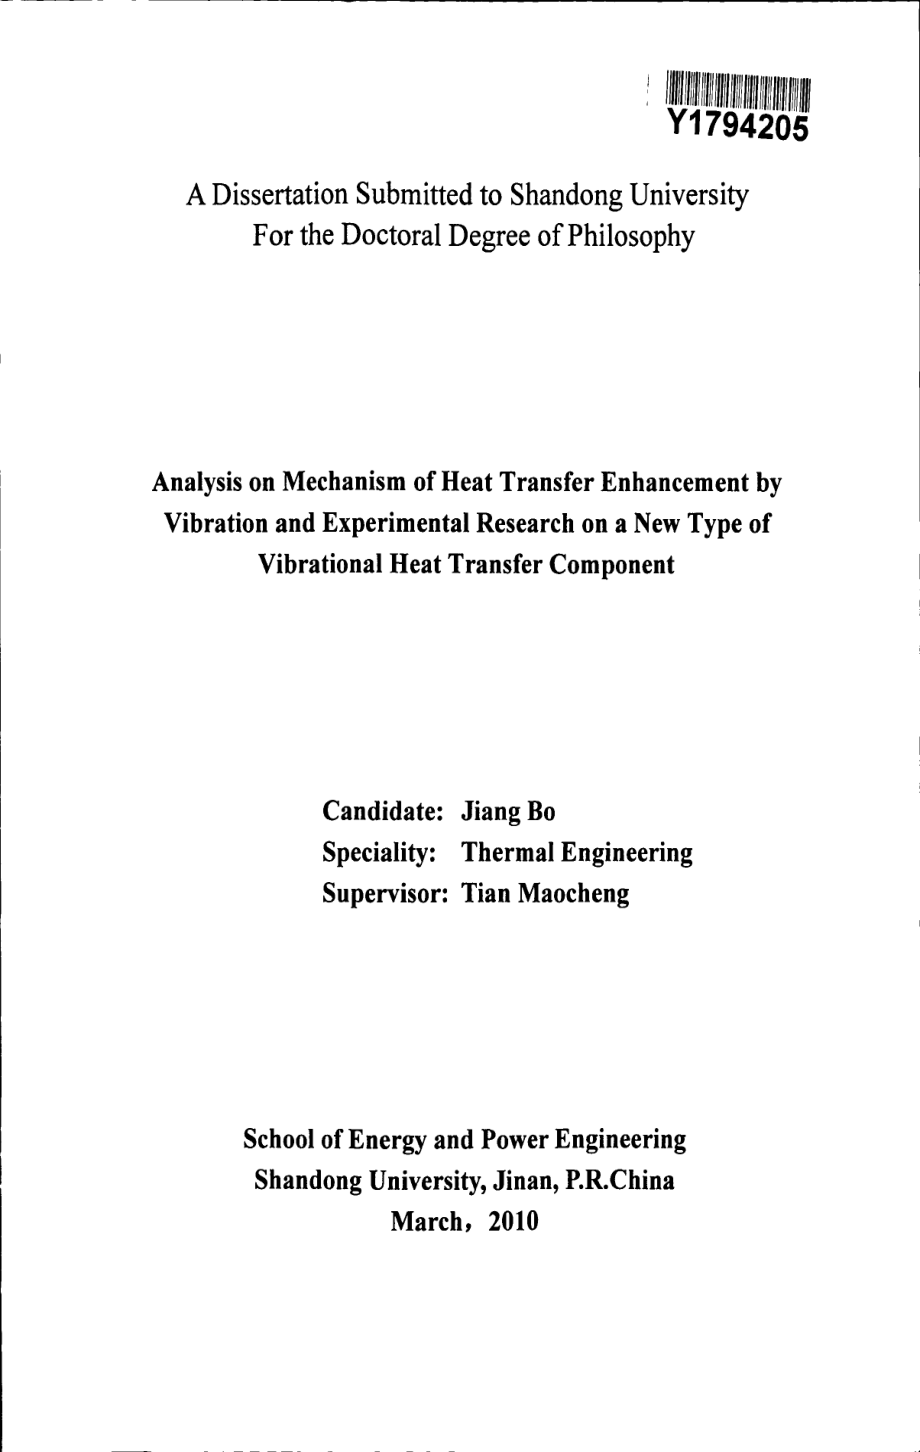 振动强化传热机理分析及新型振动传热元件实验研究_第3页